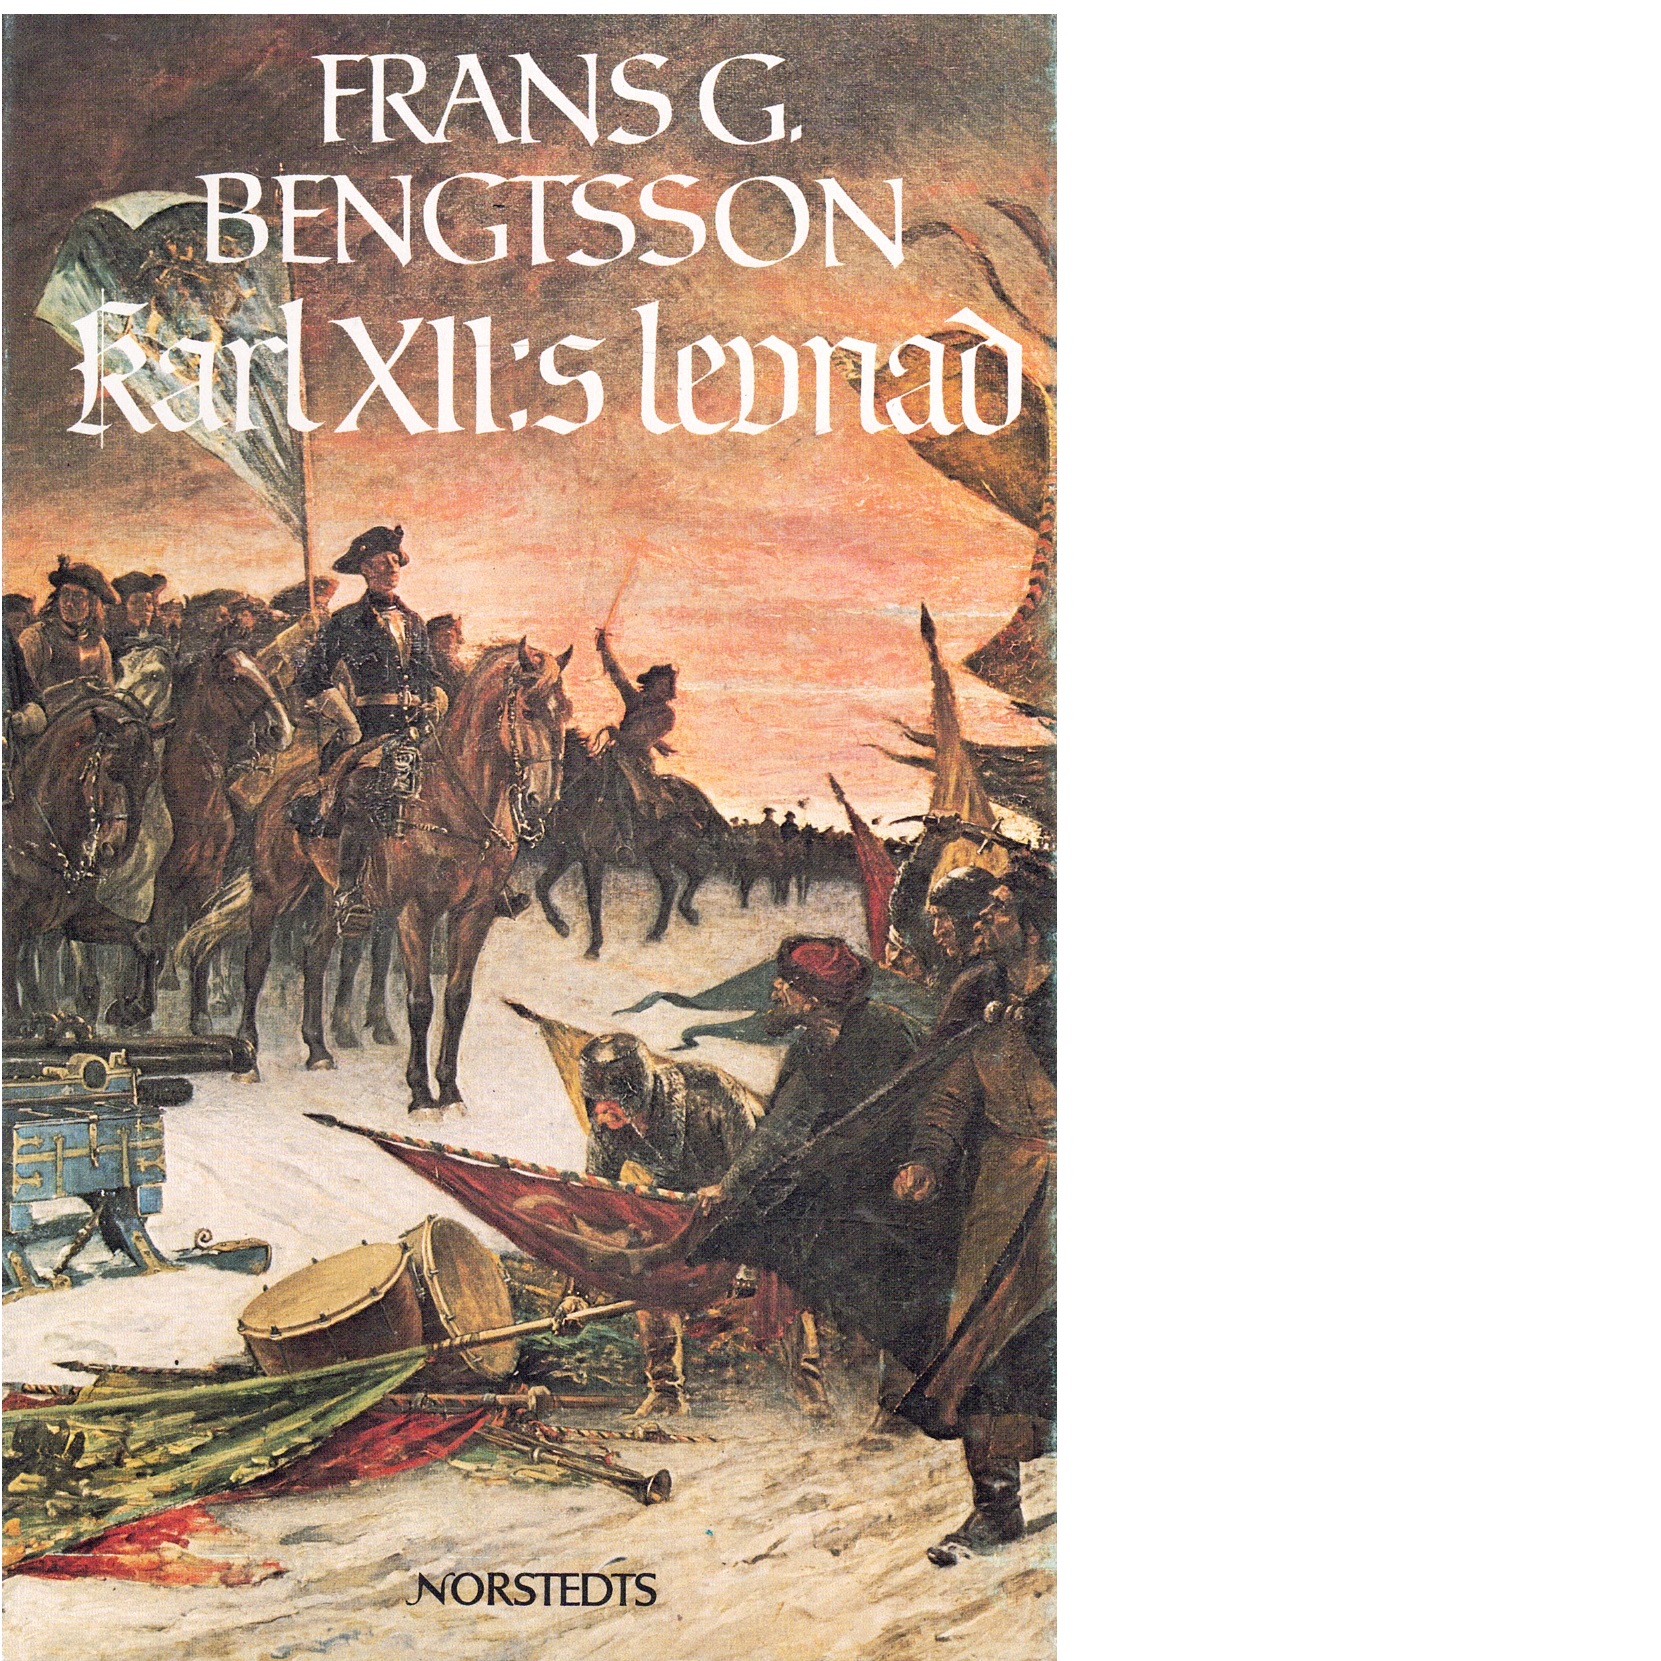 Karl XII:s levnad - Bengtsson, Frans G.